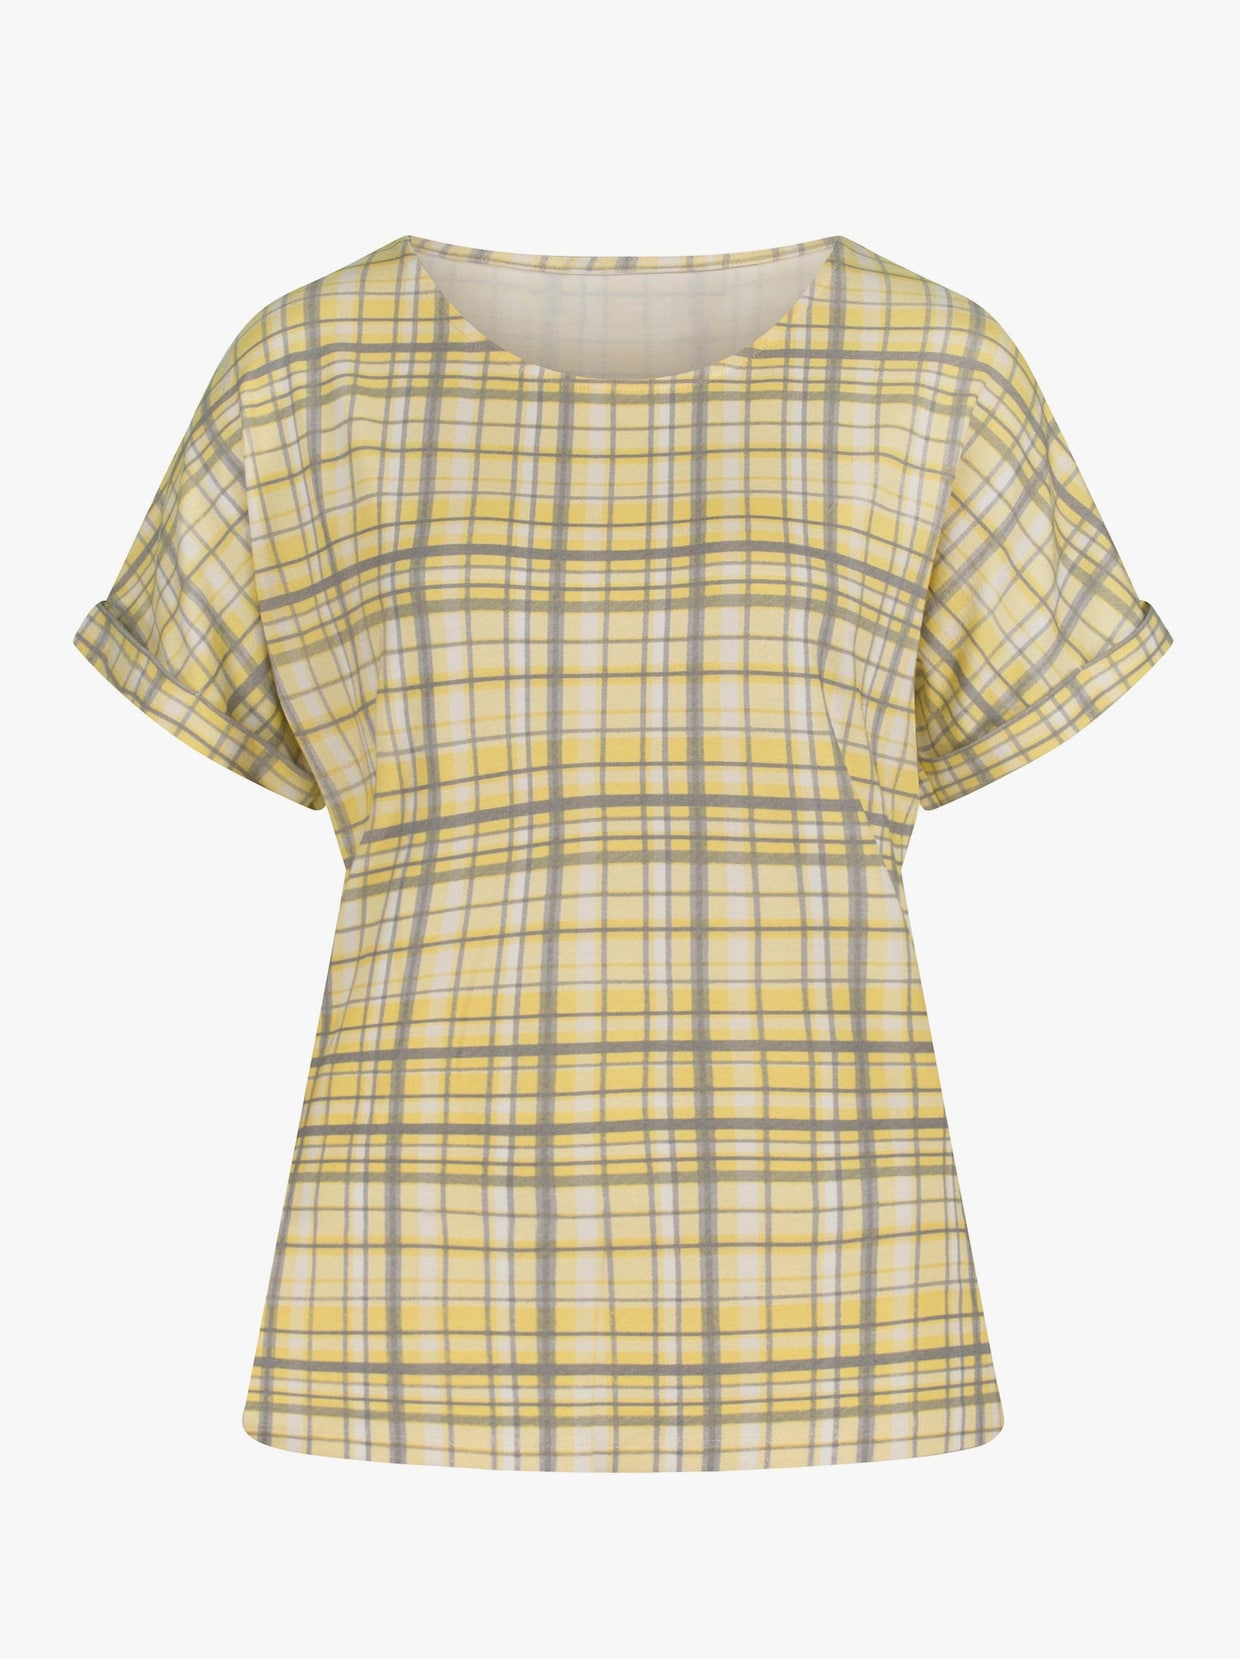 Tričko s krátkým rukávem - citronová-kostka